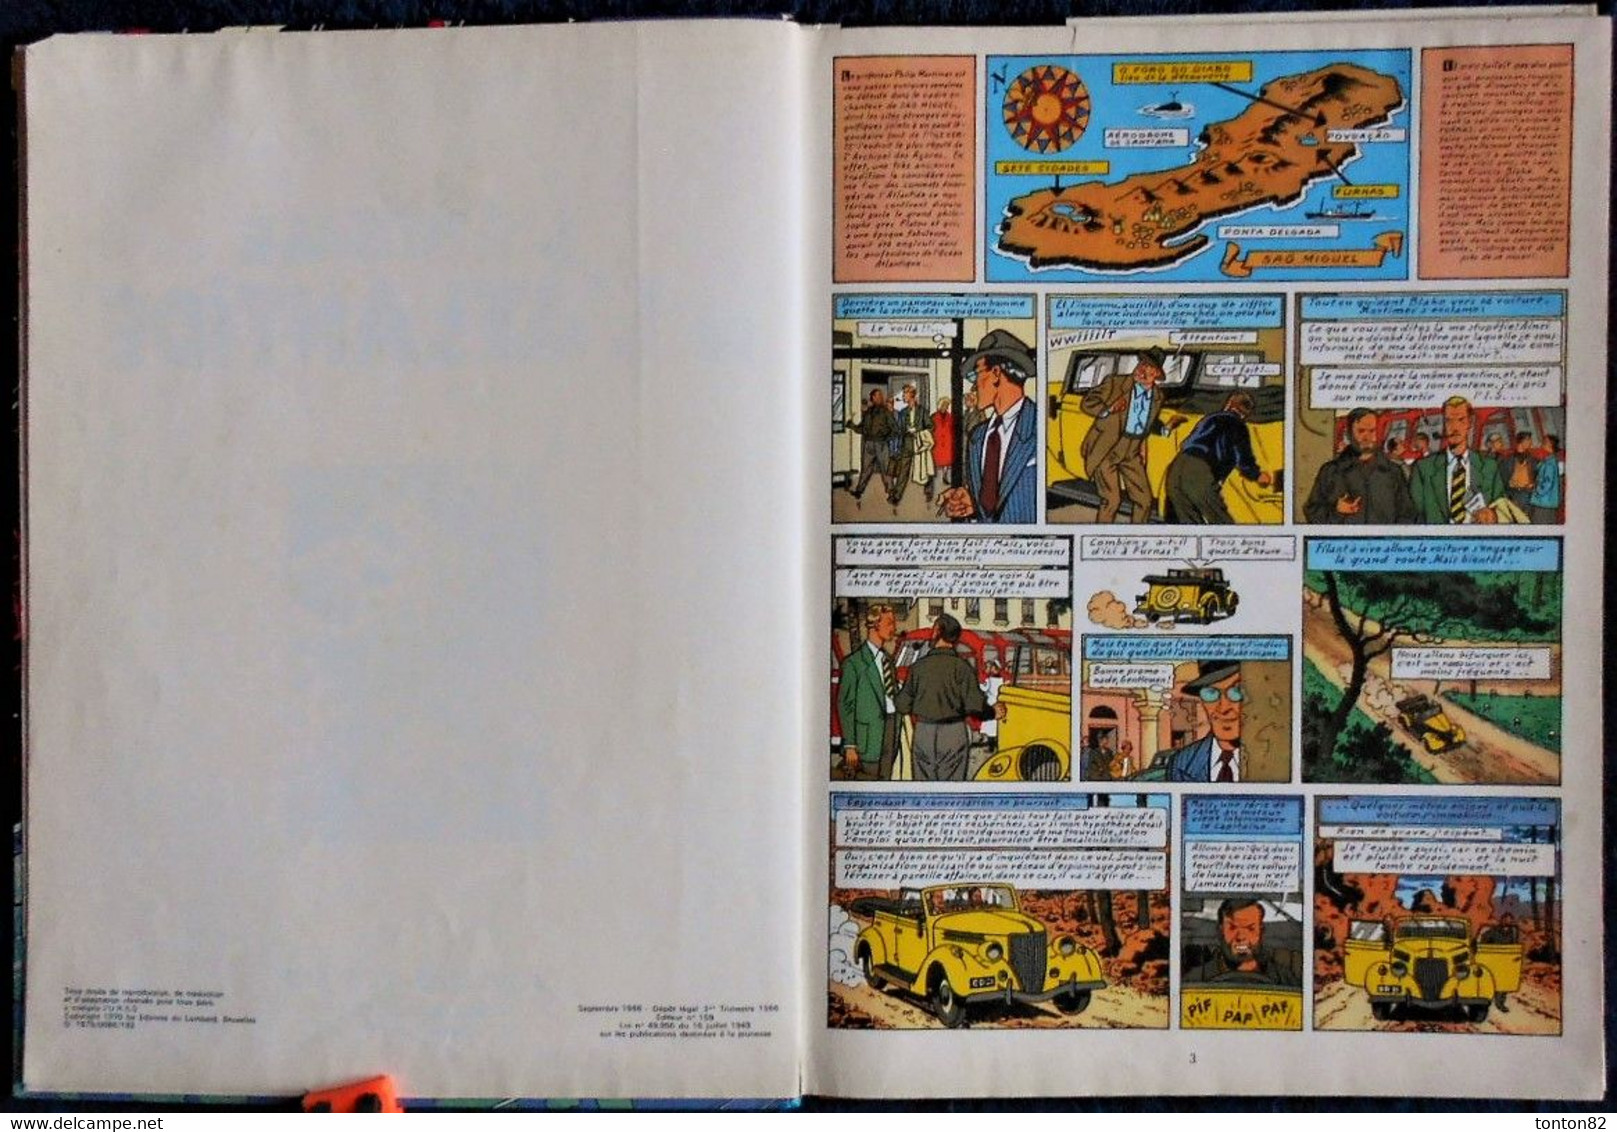 Edgar. P. Jacobs - L' énigme De L'Atlantide - Une Histoire Du Journal Tintin - ( 1970 ) . - Blake Et Mortimer